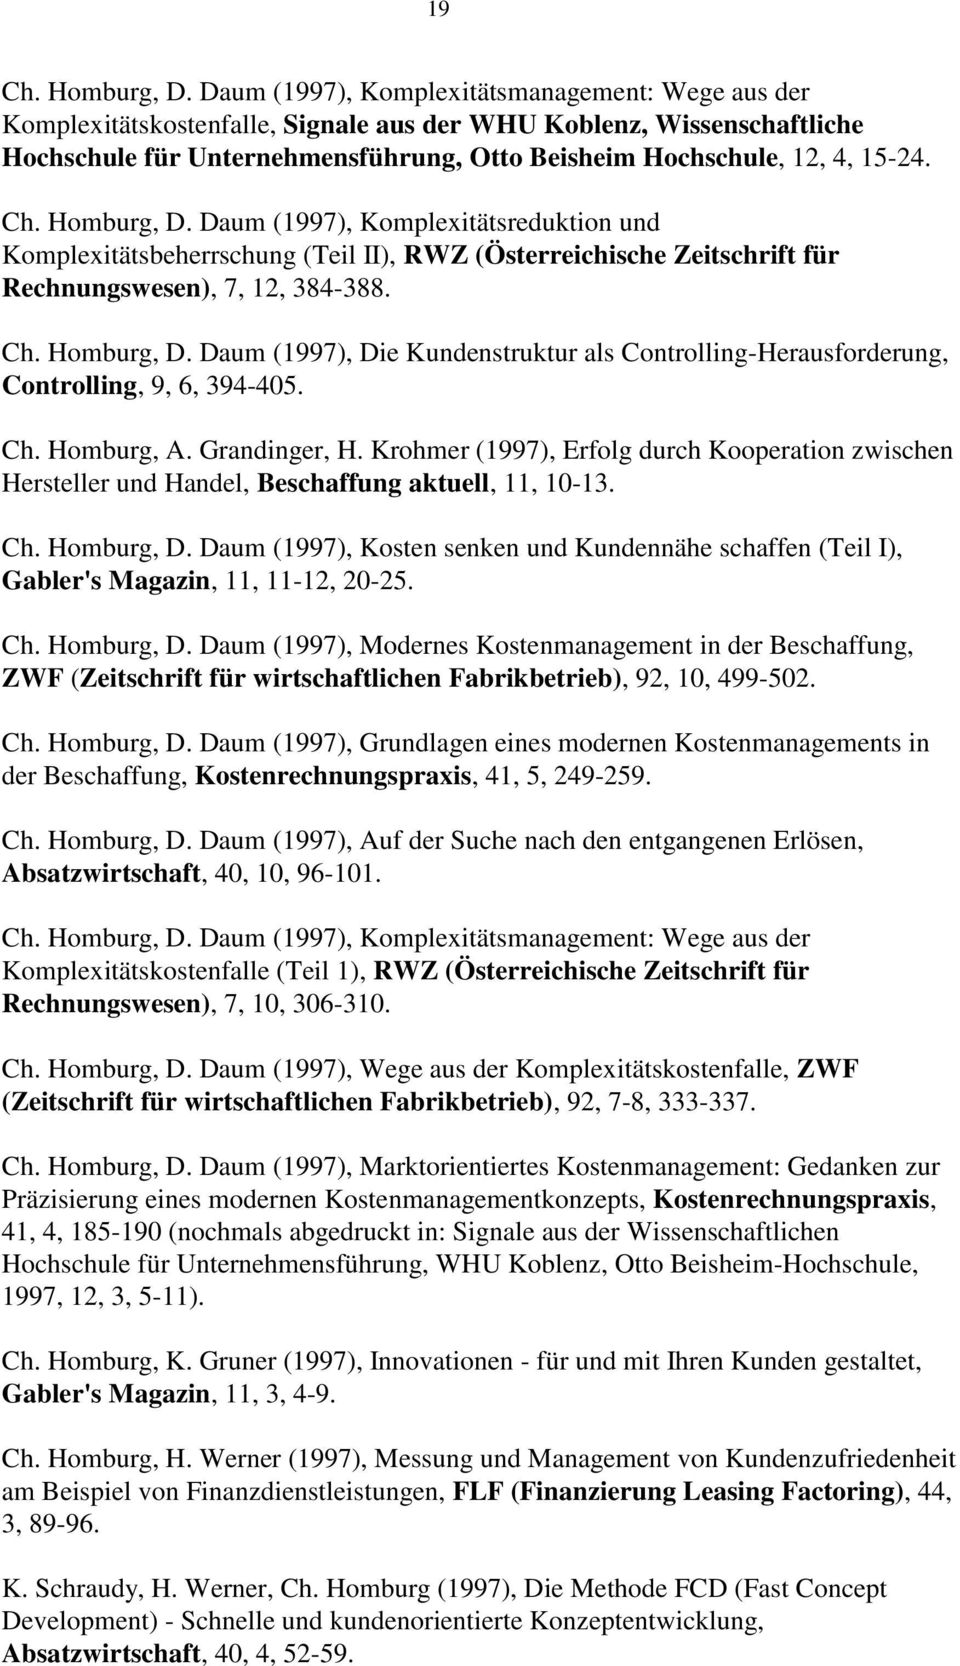 Ch. Homburg, D. Daum (1997), Komplexitätsreduktion und Komplexitätsbeherrschung (Teil II), RWZ (Österreichische Zeitschrift für Rechnungswesen), 7, 12, 384-388. Ch. Homburg, D. Daum (1997), Die Kundenstruktur als Controlling-Herausforderung, Controlling, 9, 6, 394-405.